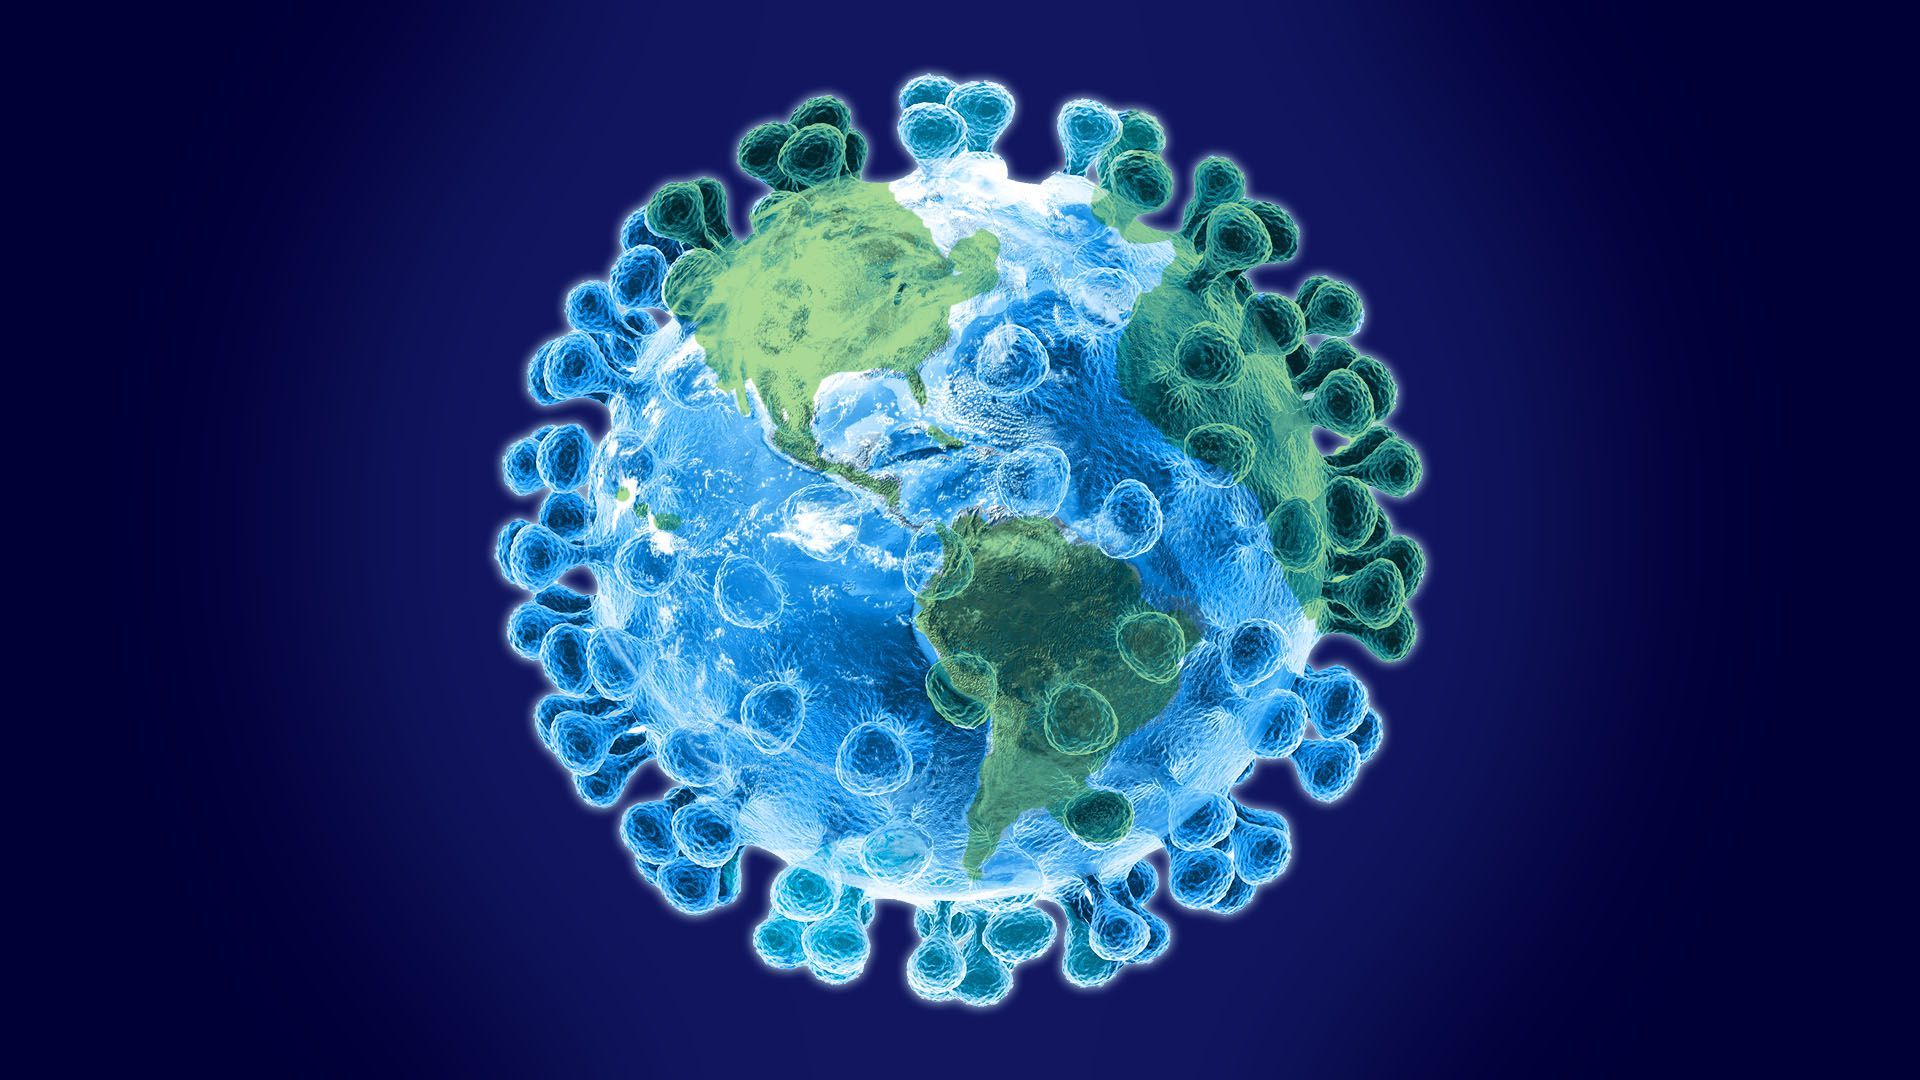 Coronavirus may be at the brink of a global pandemic